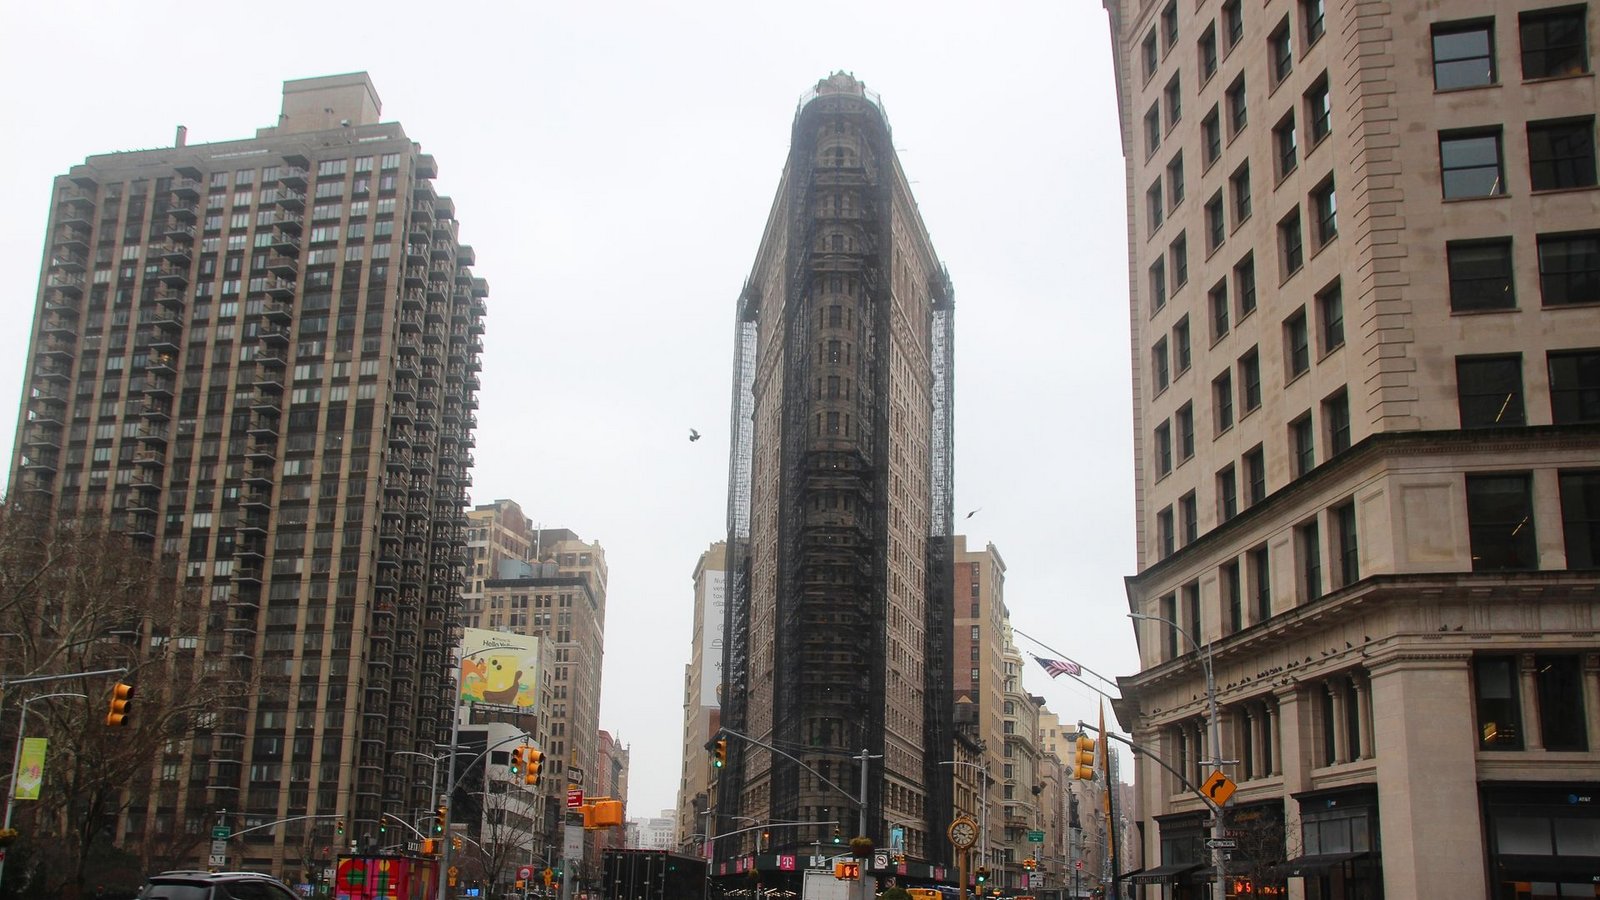 Das teilweise eingerüstete Flatiron Building in dem nach ihm benannten Flatiron District von Manhattan.Foto: Christina Horsten/dpa